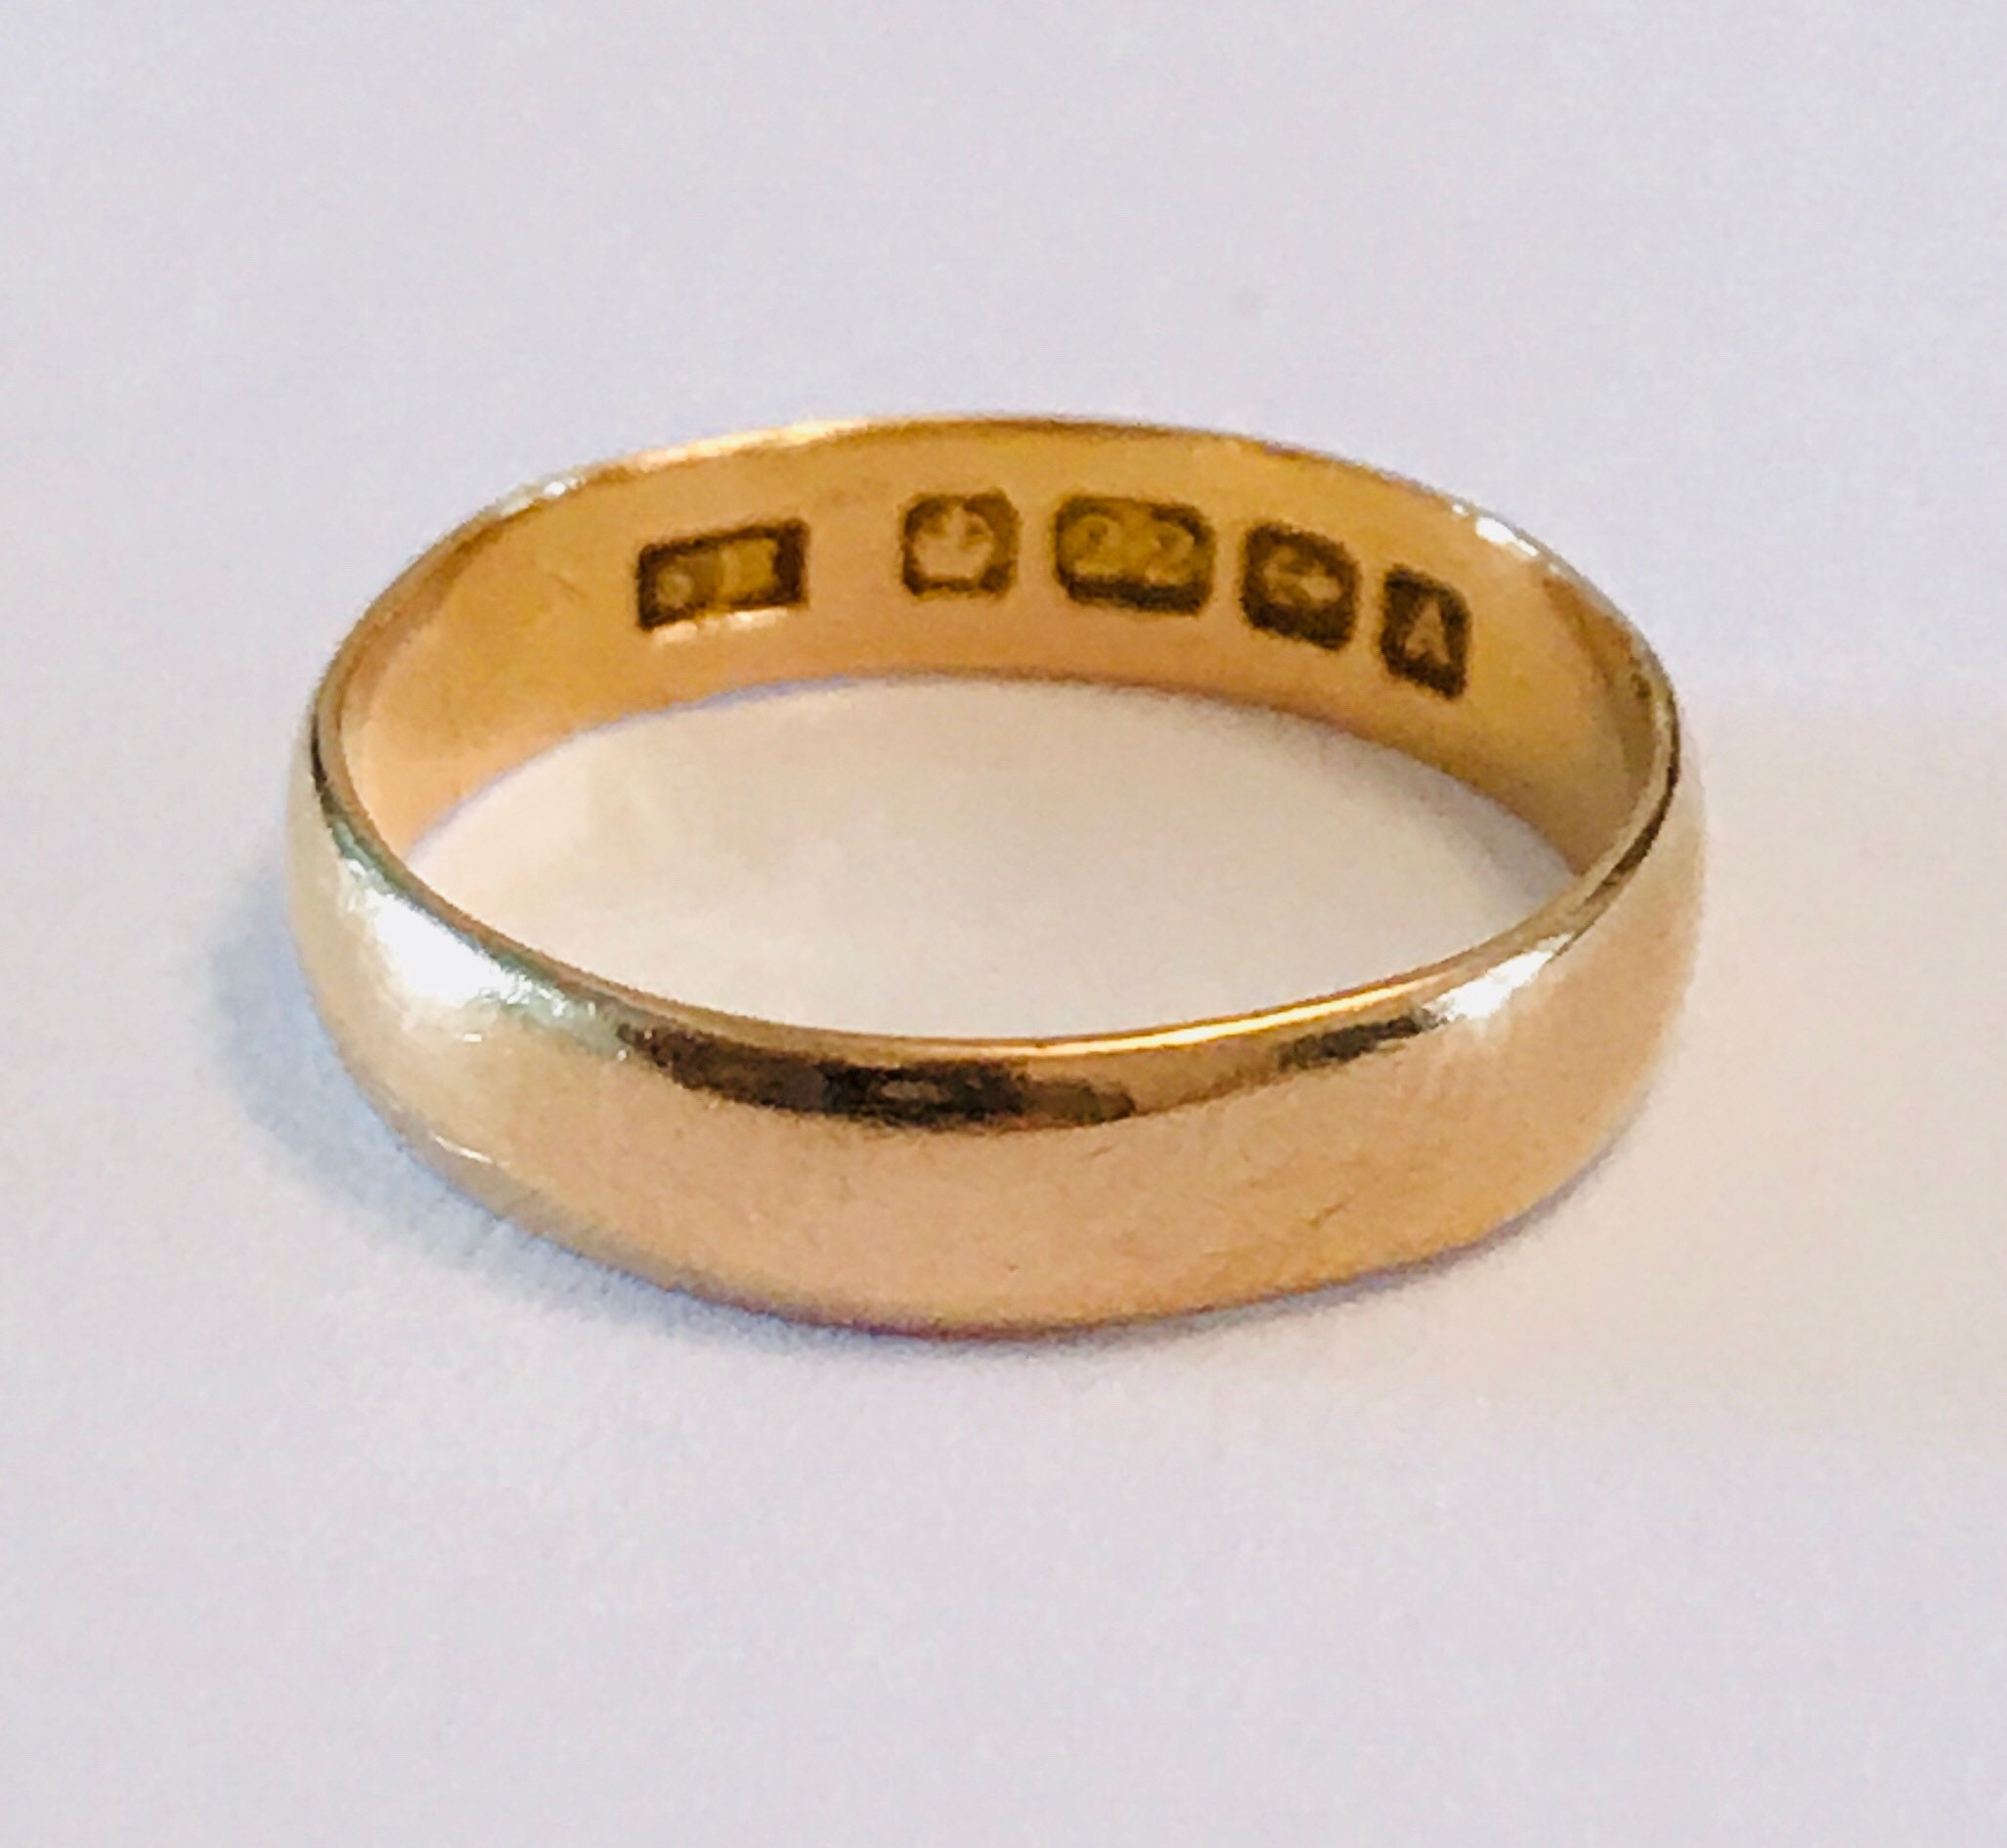 Superb antique 22ct gold wedding ring - hallmarked Birmingham 1925 ...